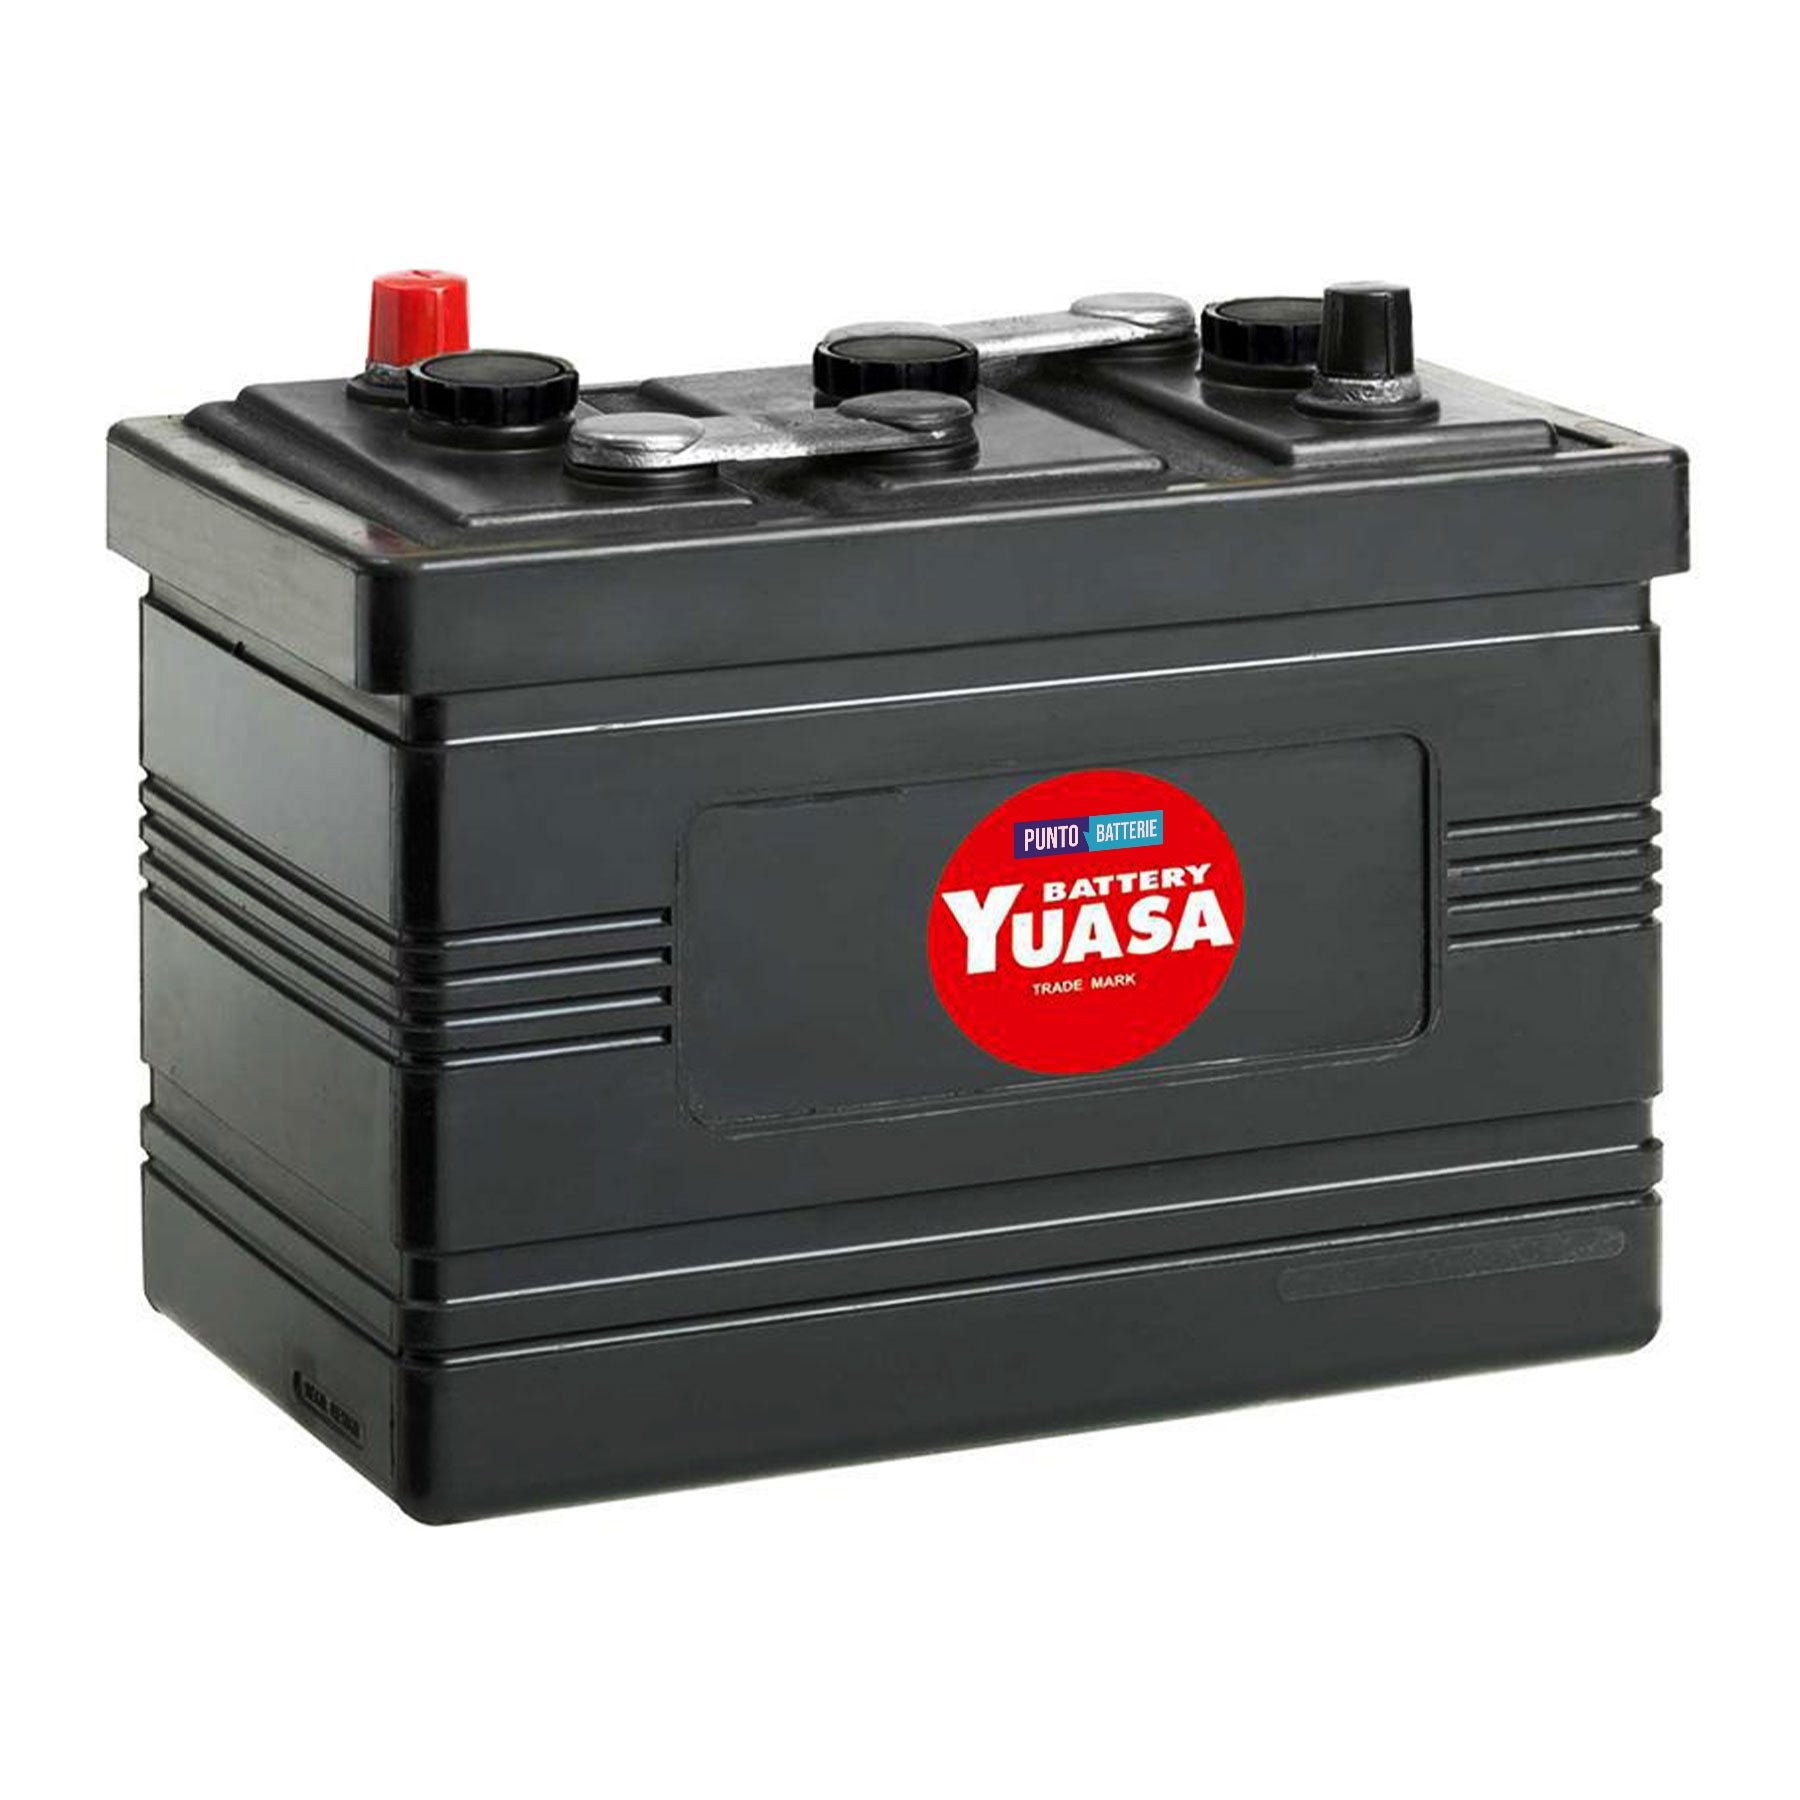 Batteria originale Yuasa Classic e Oldtimer 521, dimensioni 291 x 170 x 227, polo positivo a destra, 6 volt, 112 amperora, 400 ampere. Batteria per veicoli d'epoca.